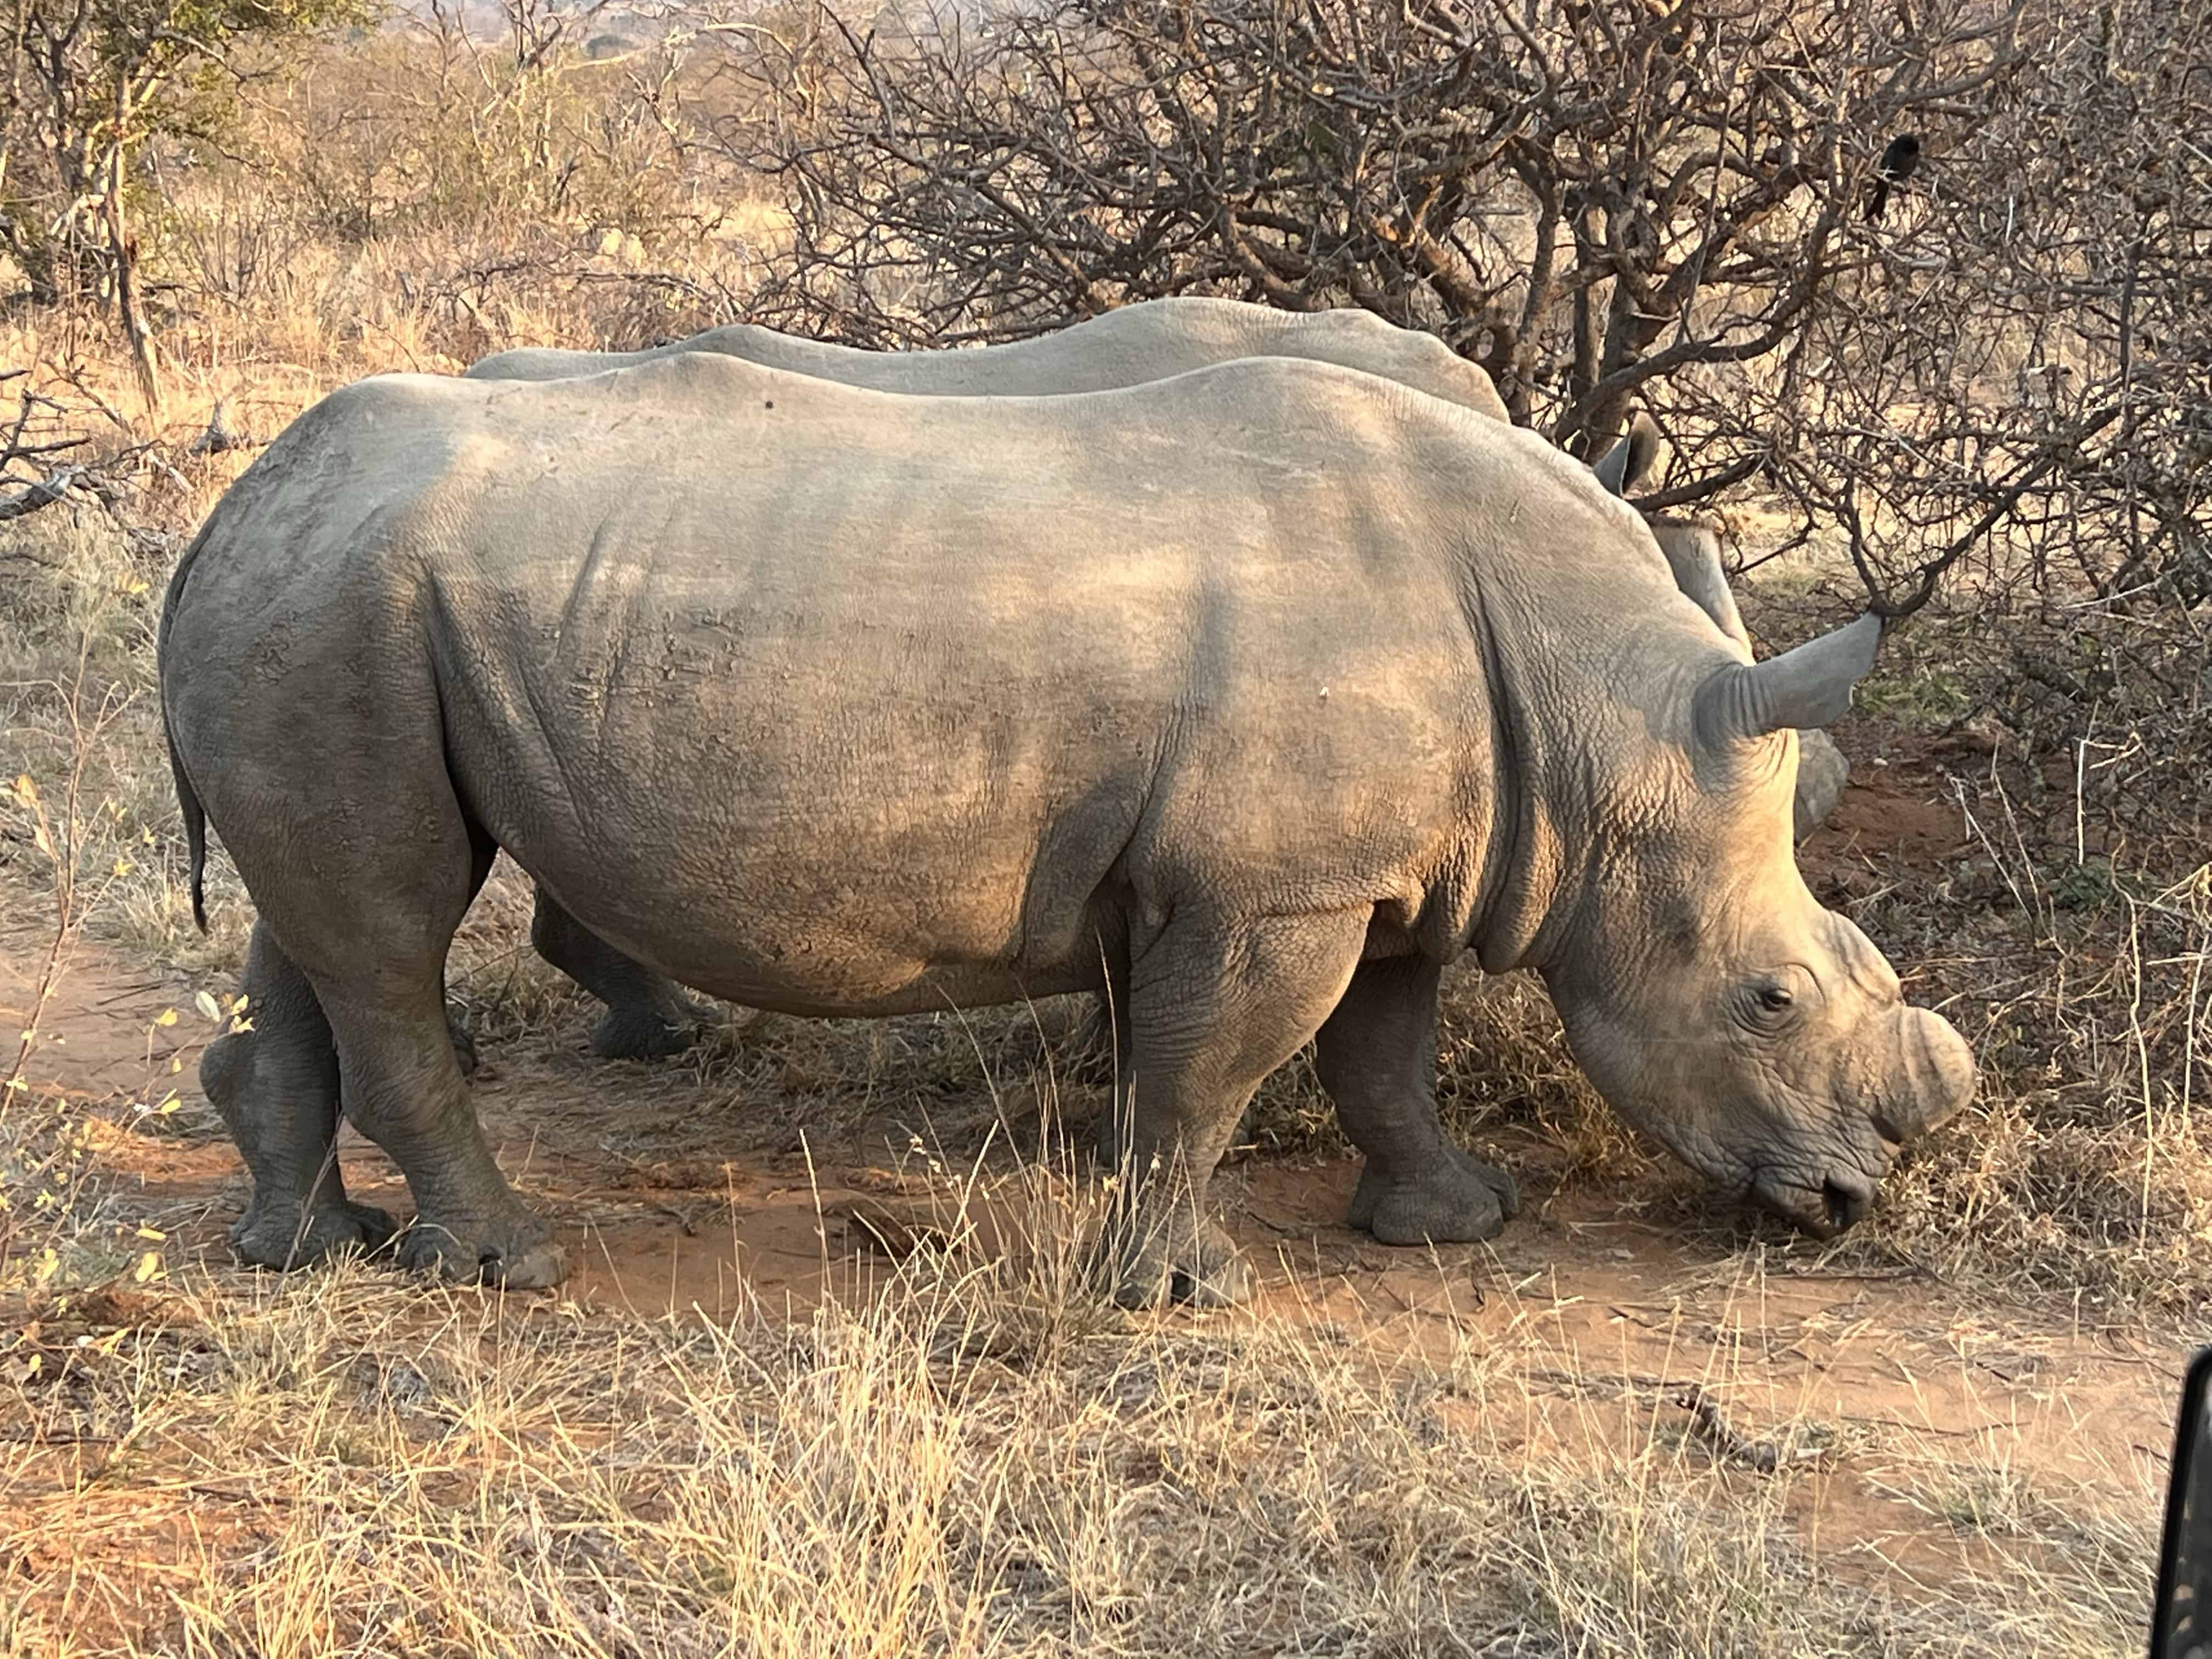 Africa Travel Blog (9/8/22): Arriving in Kruger National Park